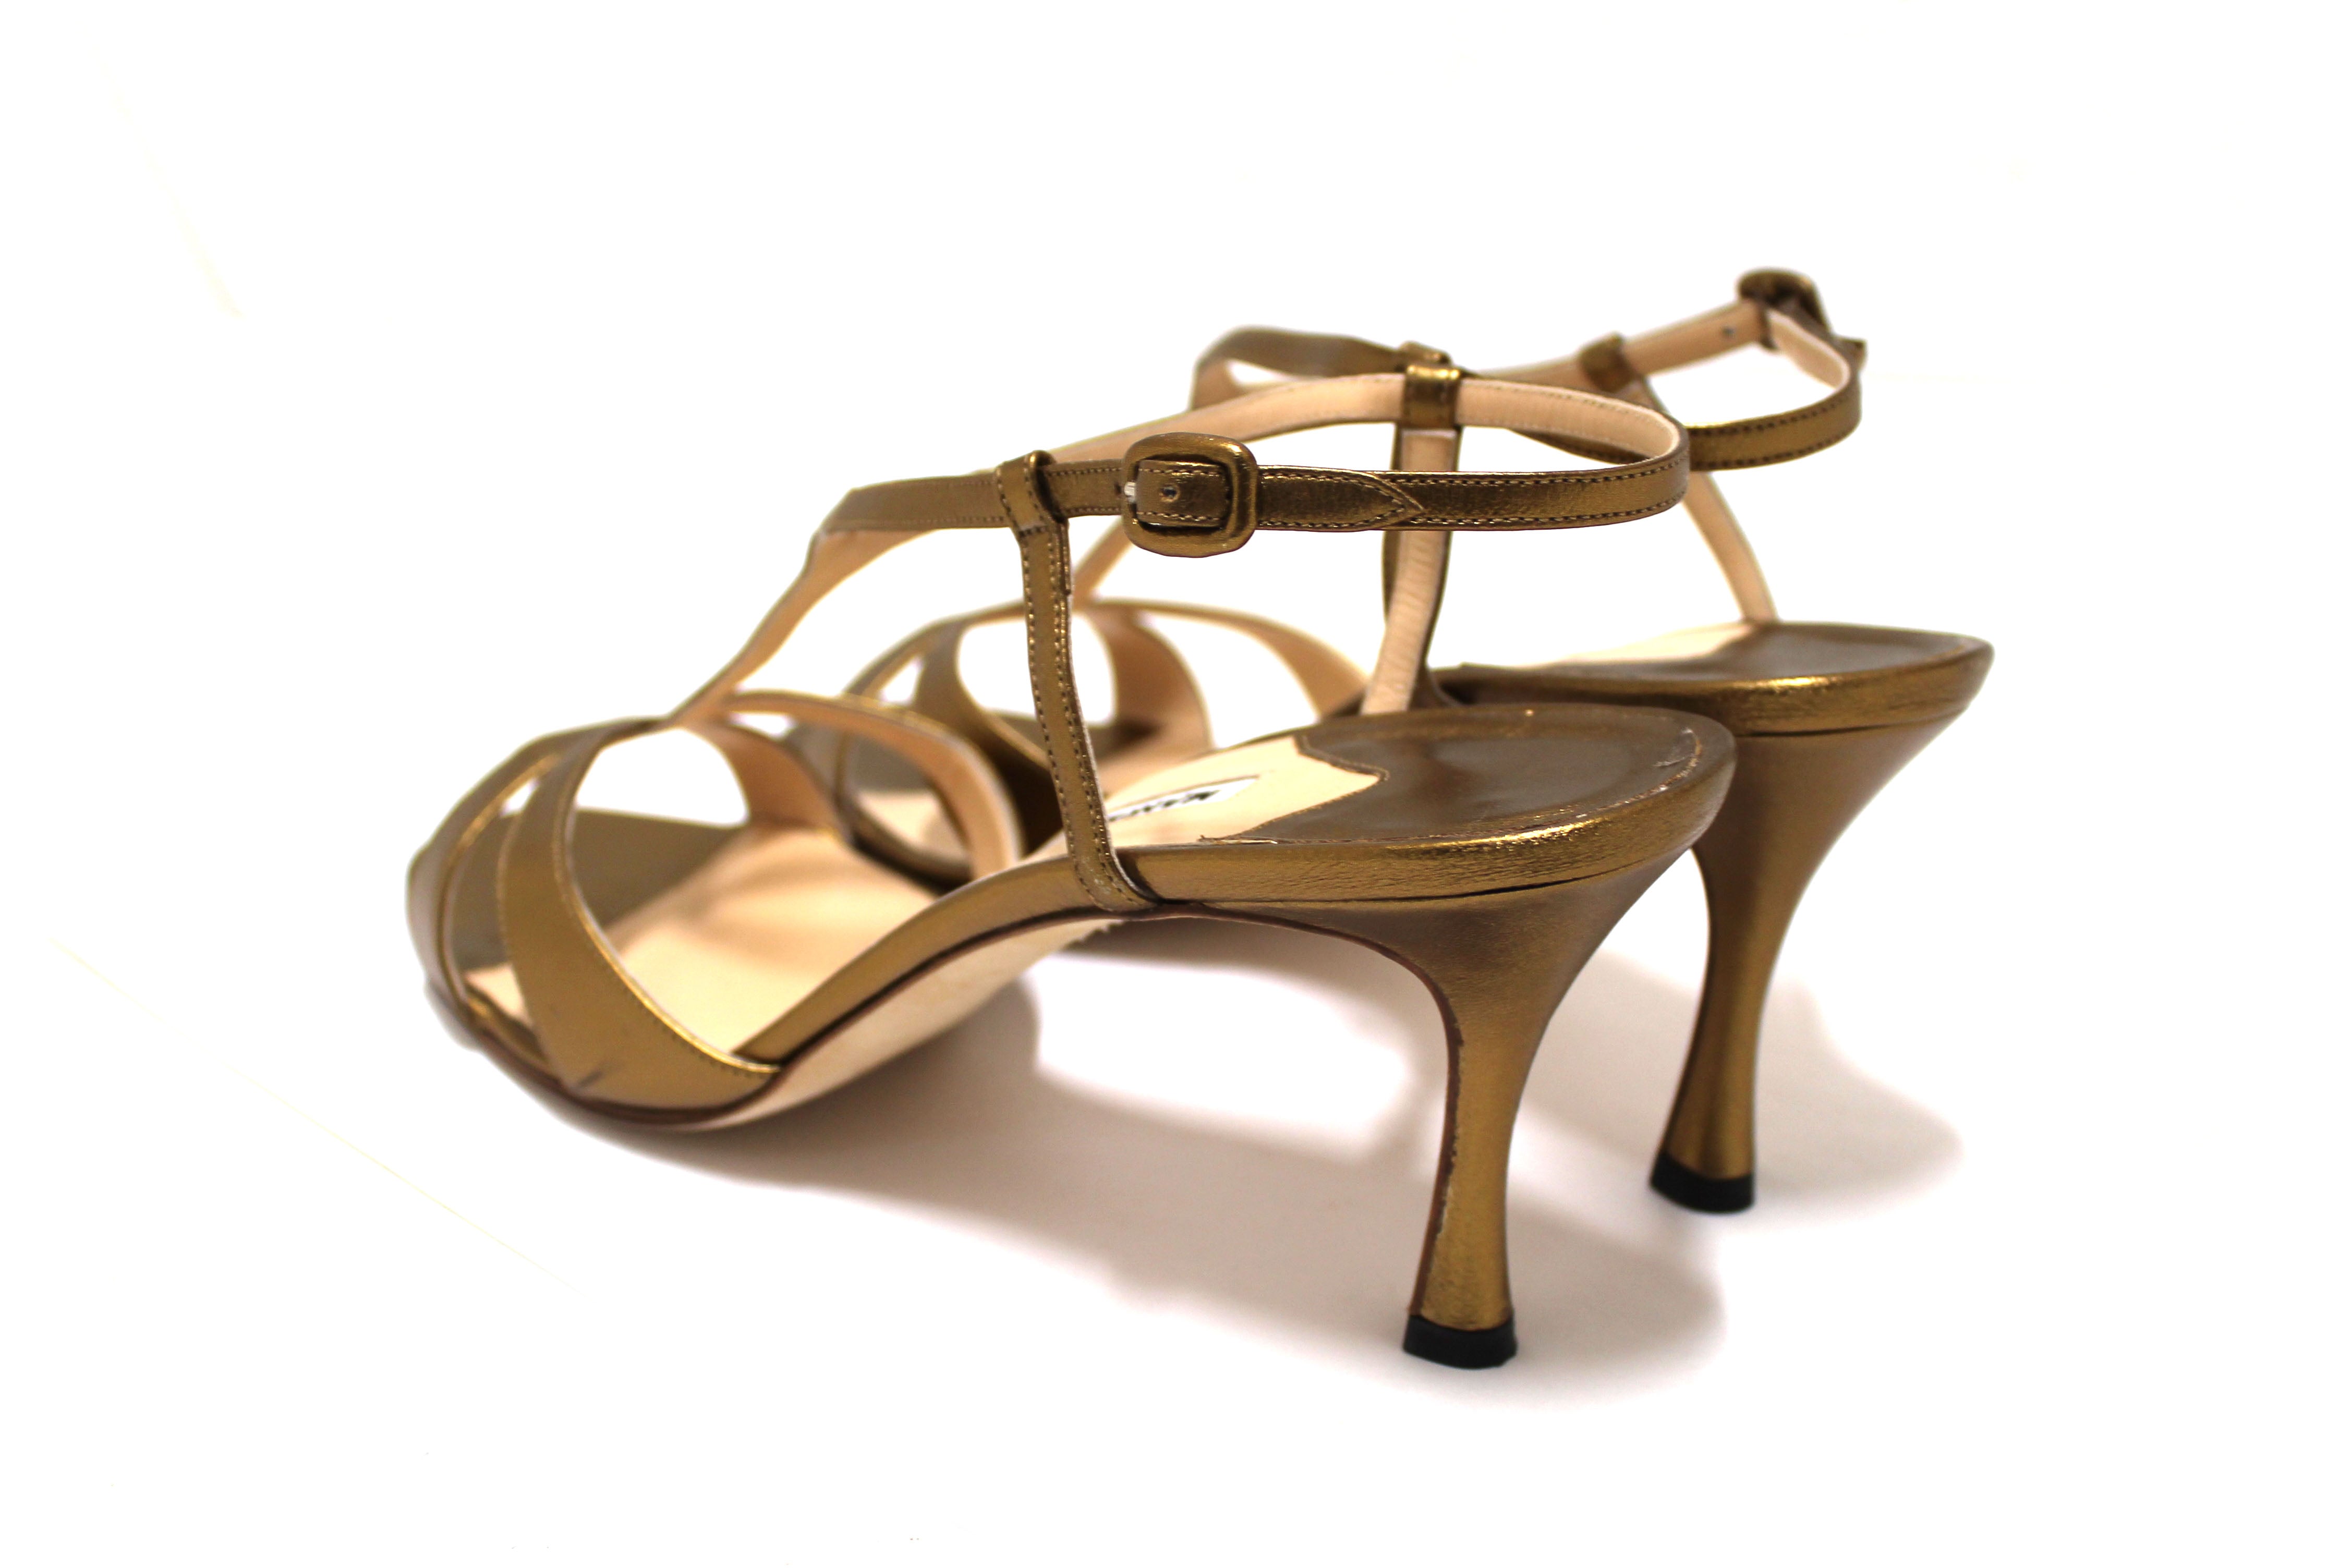 Authentic Manolo Blahnik Bronze Leather Antonella Slingback Heels Size 40